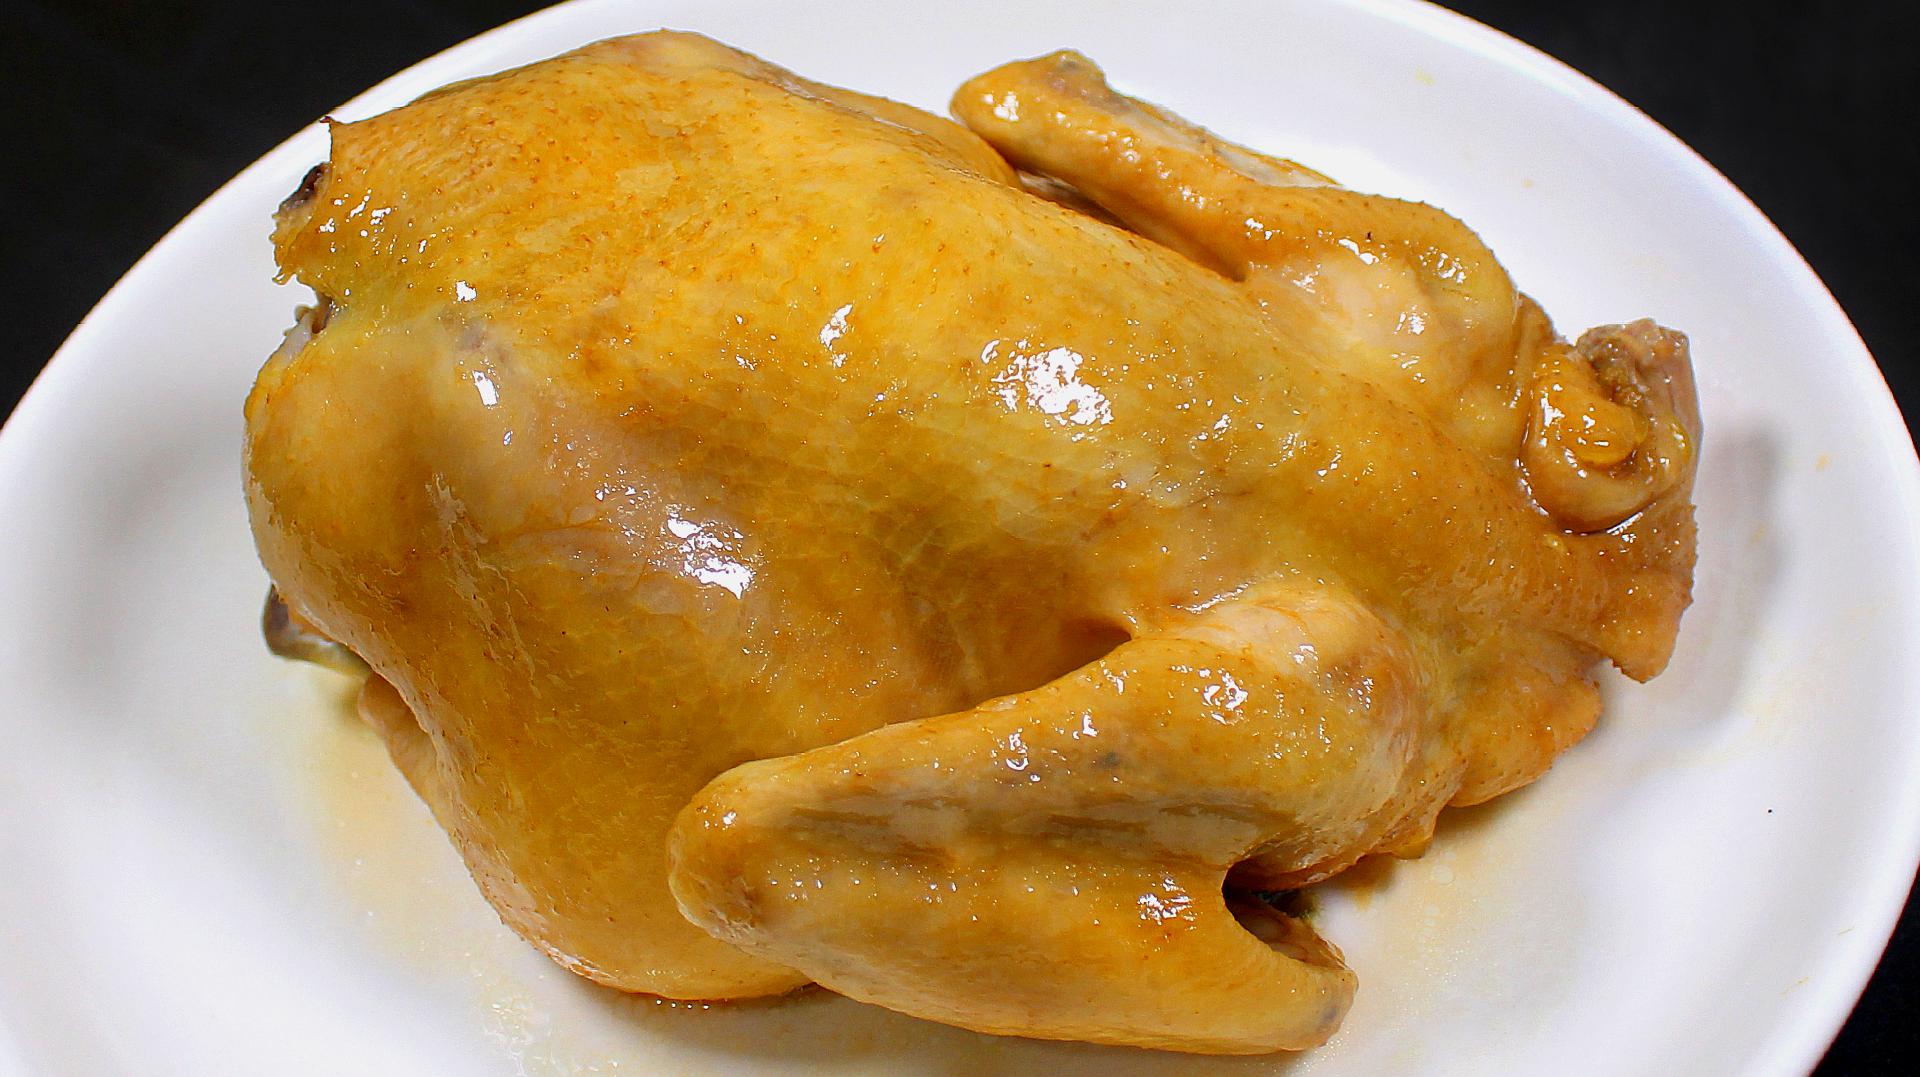 盐焗鸡的懒人做法,一个电饭锅搞定,做出来色泽金黄,肉嫩鲜香